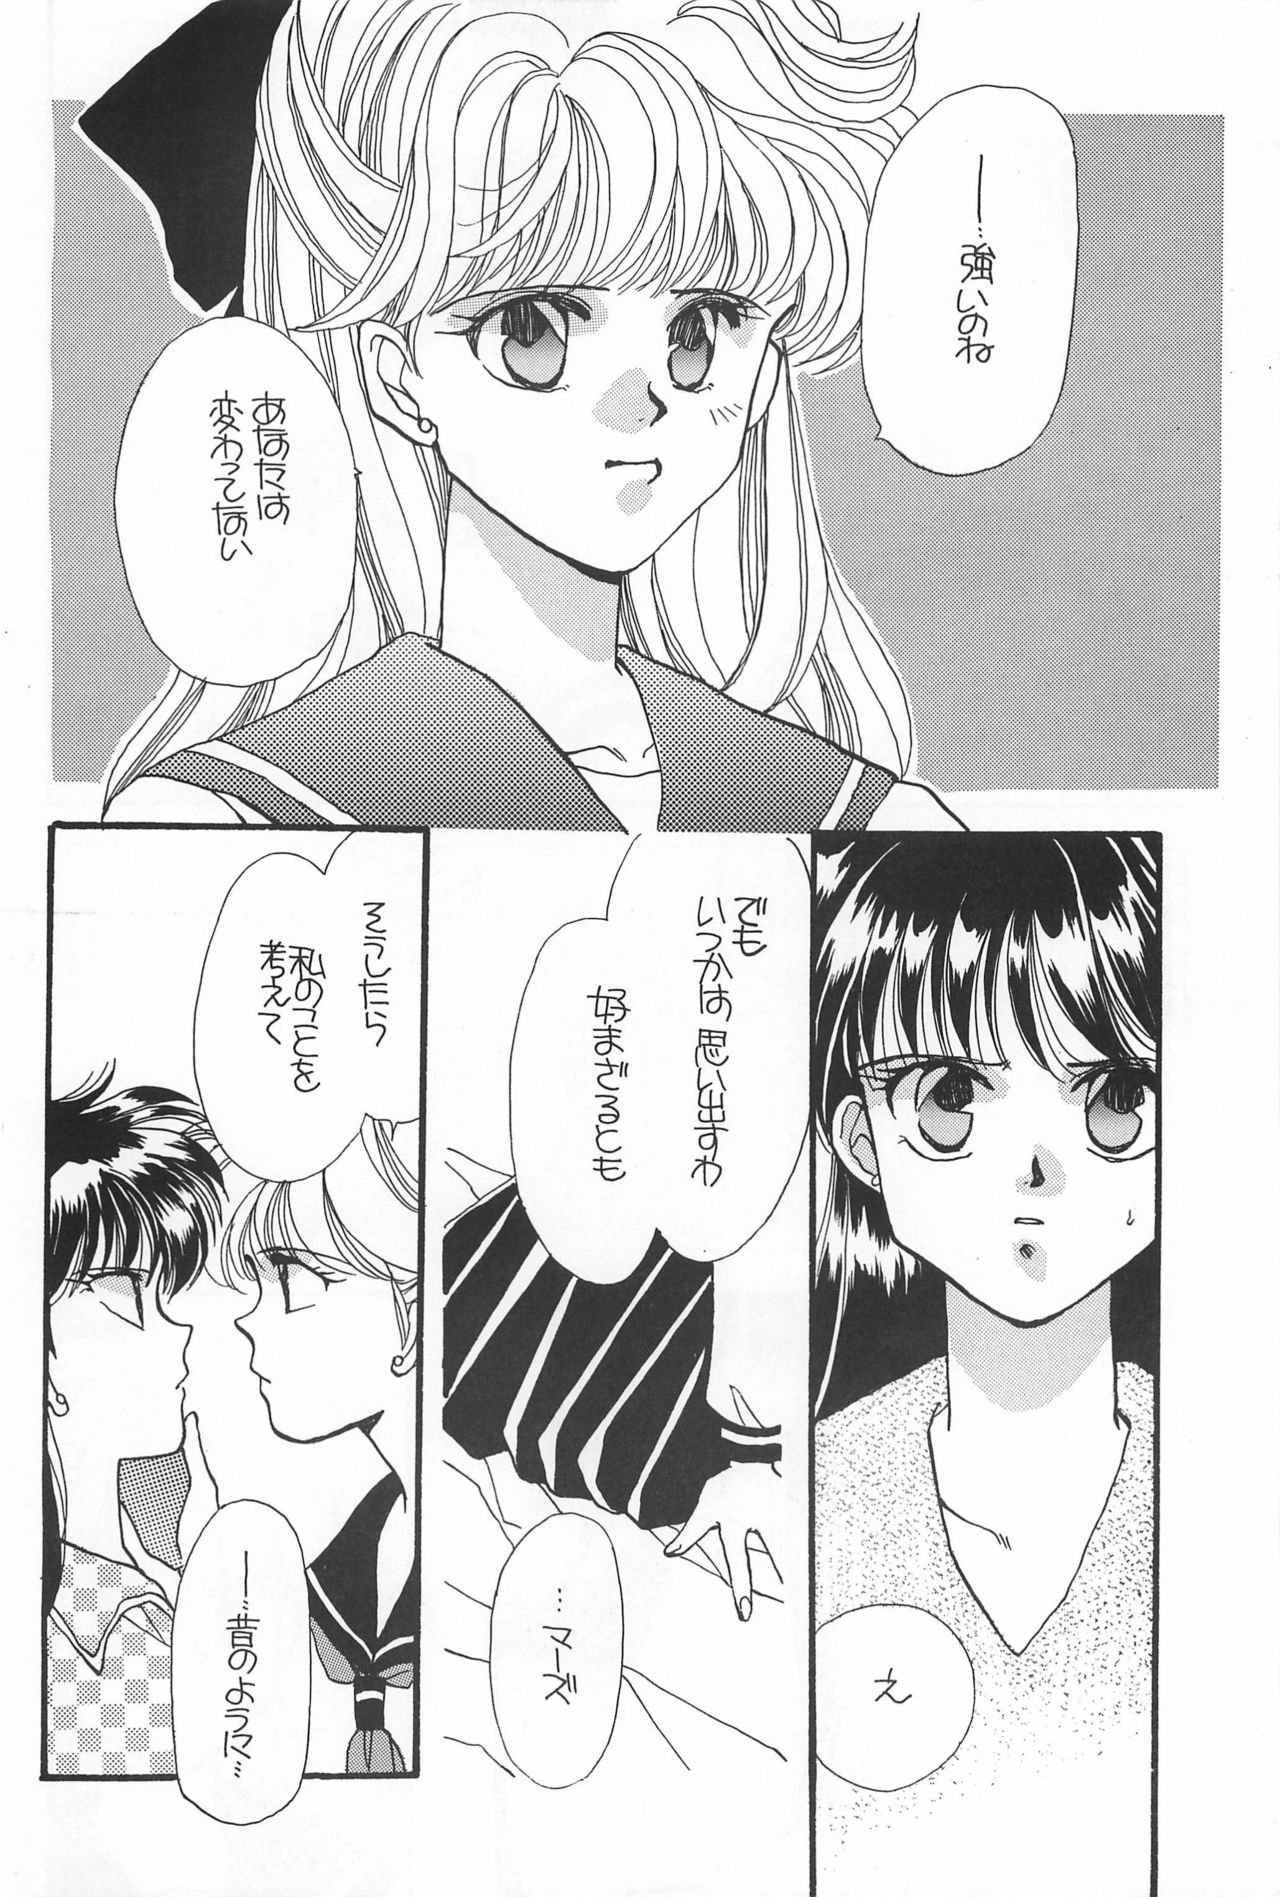 [Hello World (Muttri Moony)] Kaze no You ni Yume no You ni - Sailor Moon Collection (Sailor Moon) 131